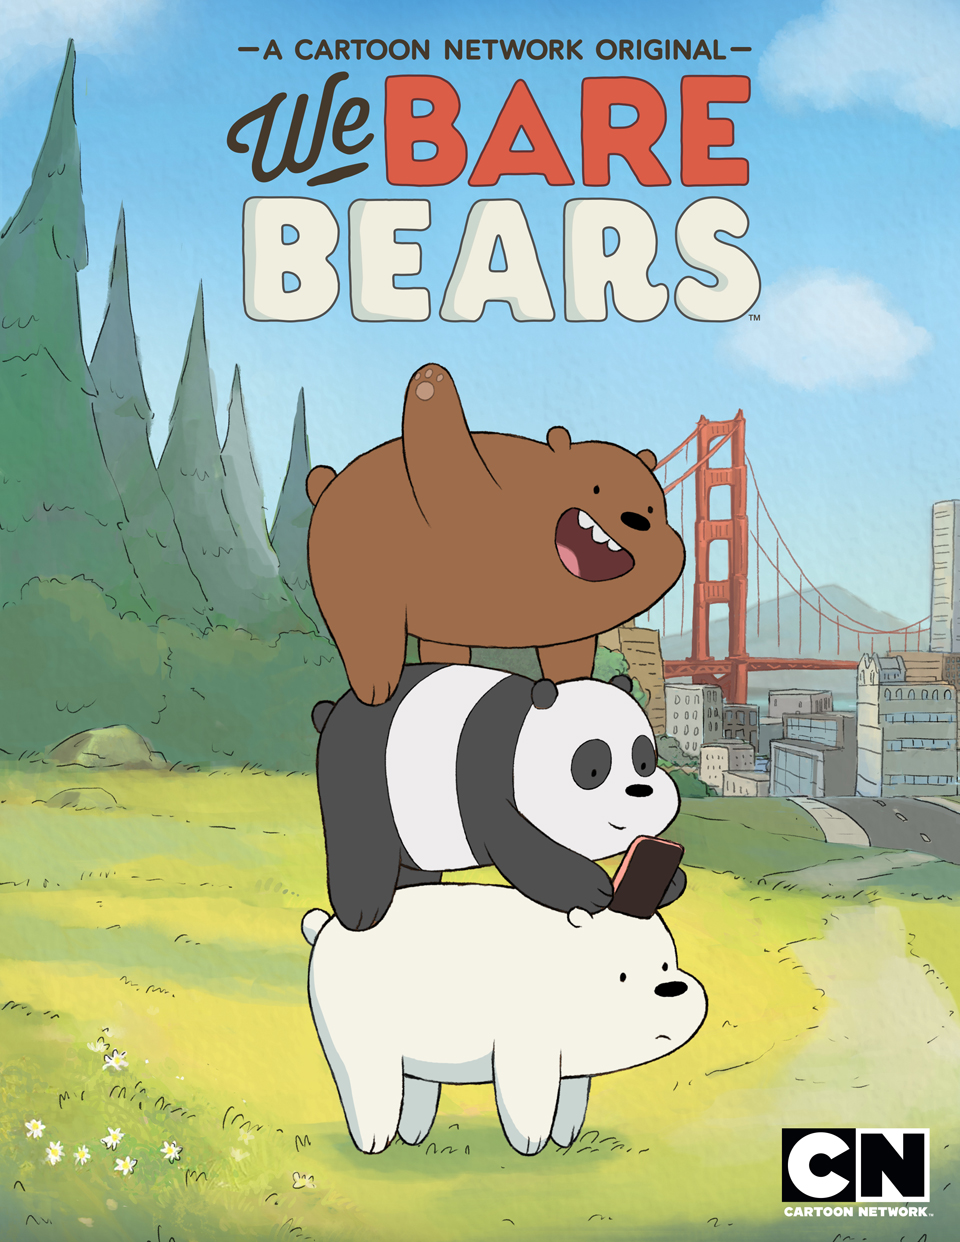 Trong We Bare Bears, ba chú gấu có tính cách khác nhau nhưng lại rất thân thiện và đáng yêu. Bạn sẽ bị cuốn hút bởi những câu chuyện và hành động tuyệt vời của chúng, và chắc chắn muốn xem thêm.